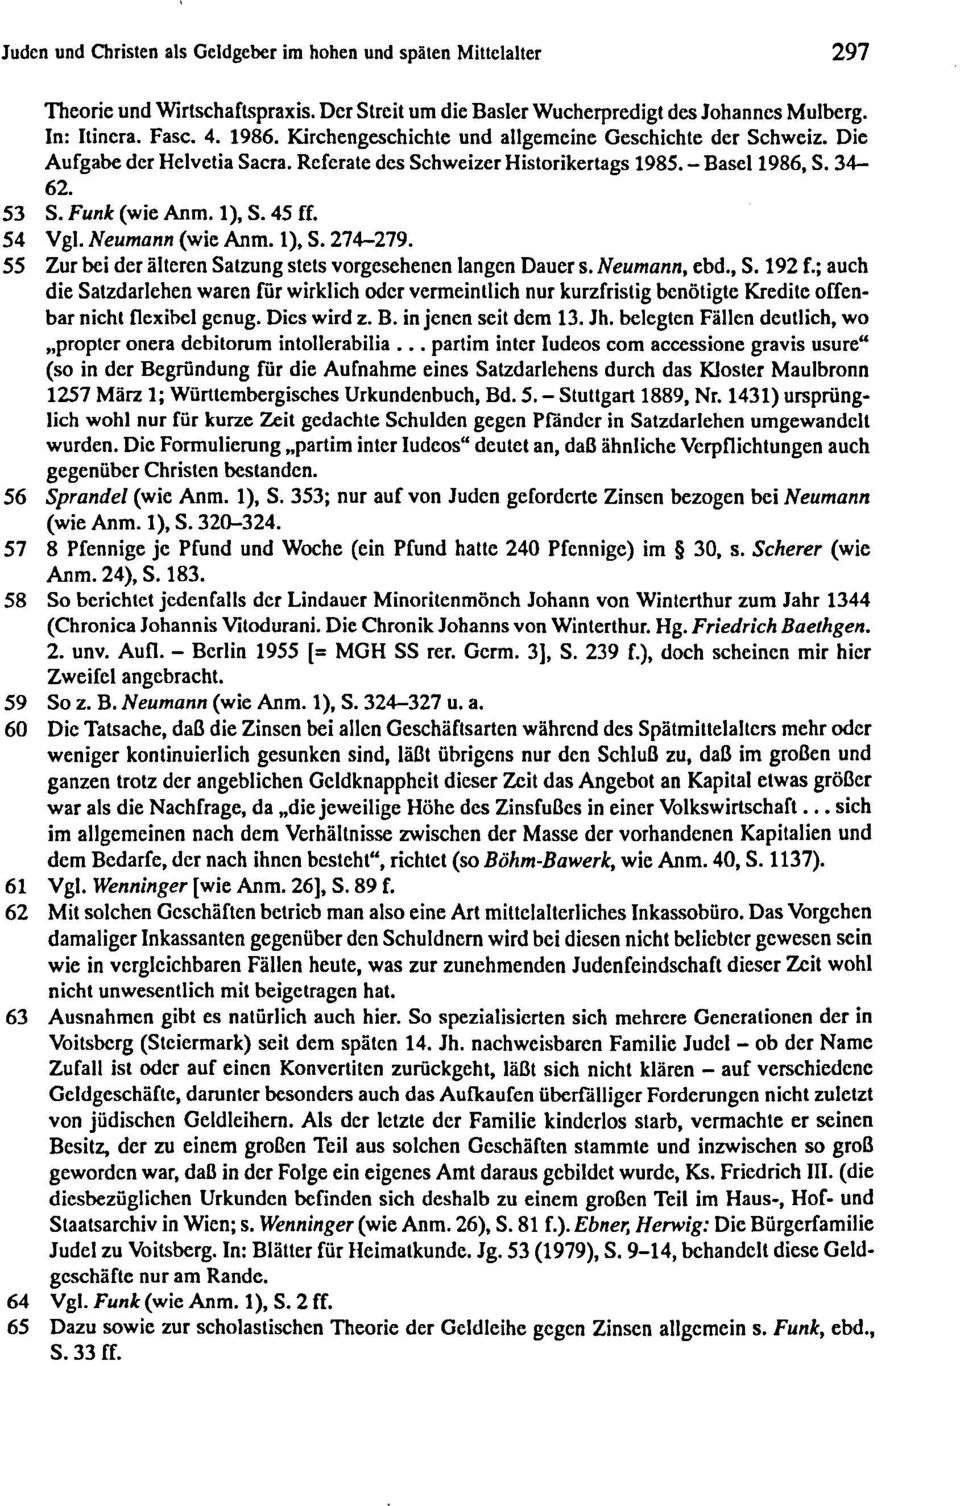 . Neumann (wie Anm. I), S. 274-279. 55 Zur bei der äleren Sazung ses vorgesehenen langen Dauer s. Neumann, ebd., S. 192 f.